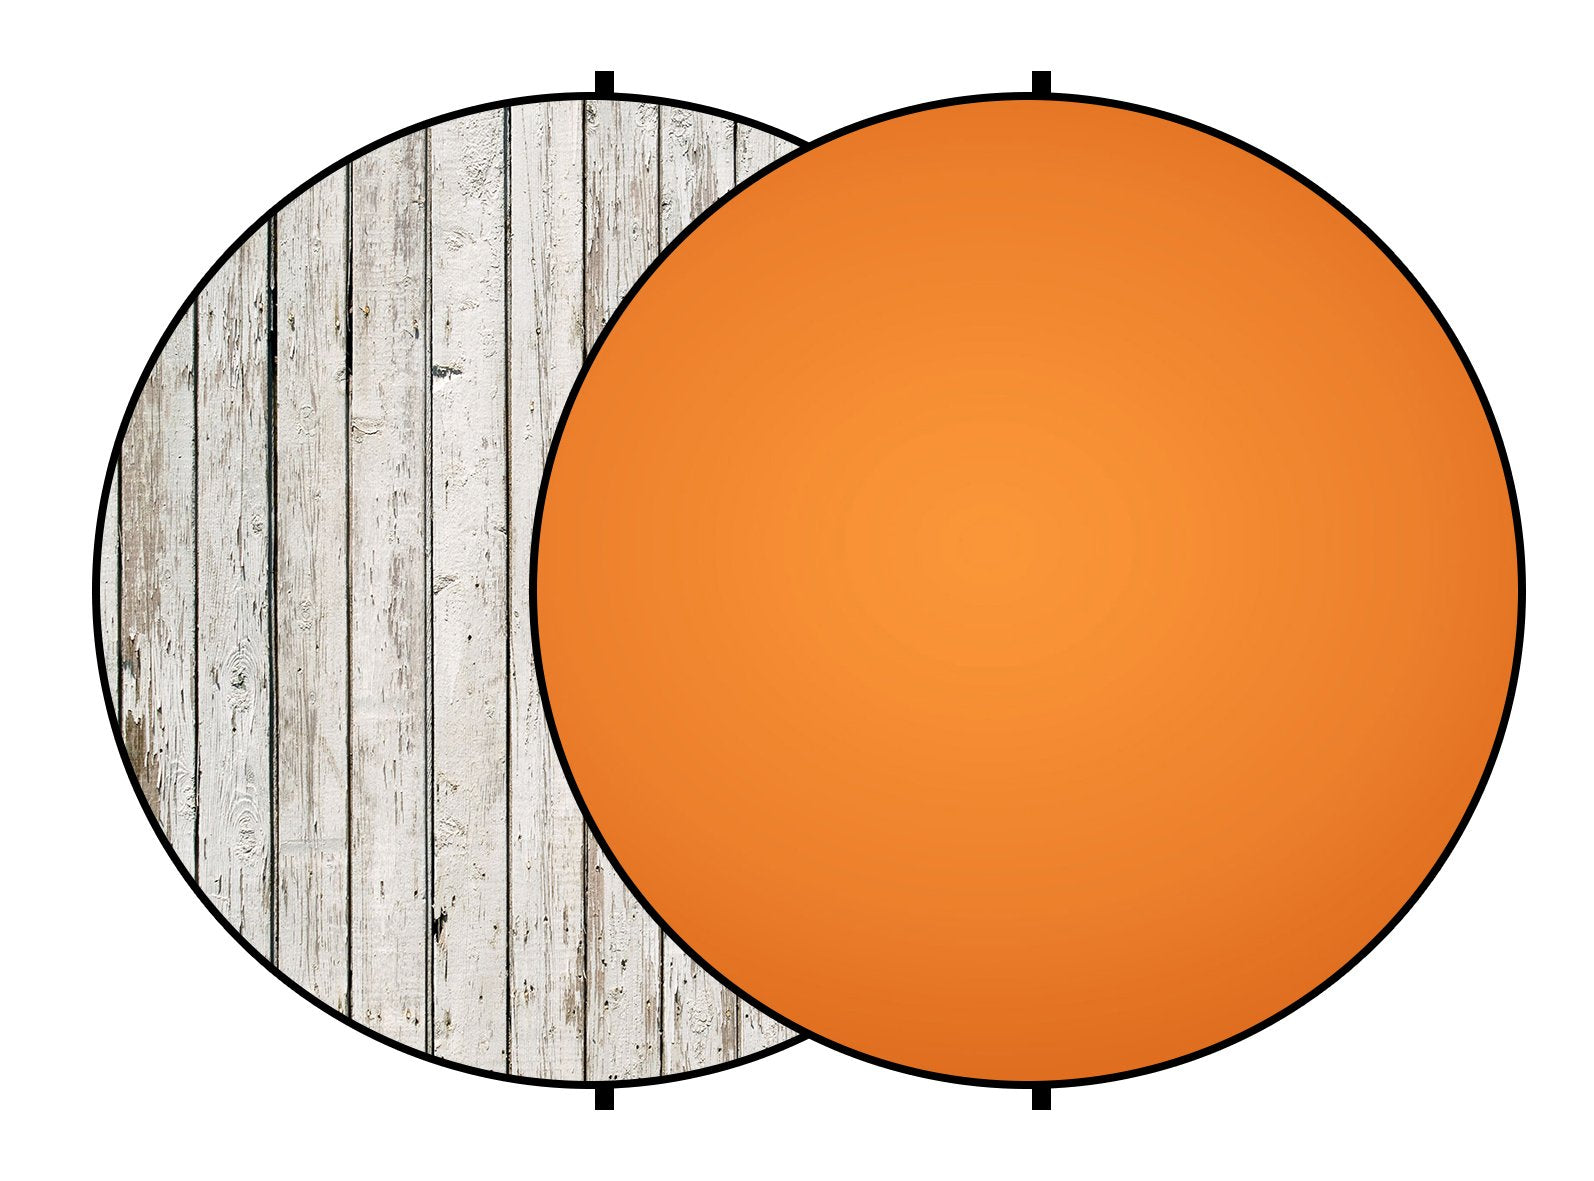 Kate Double-face Rond Bois Blanc/Abstrait Orange Photographie Toile de fond Pliable 5x5pi(1.5x1.5m)